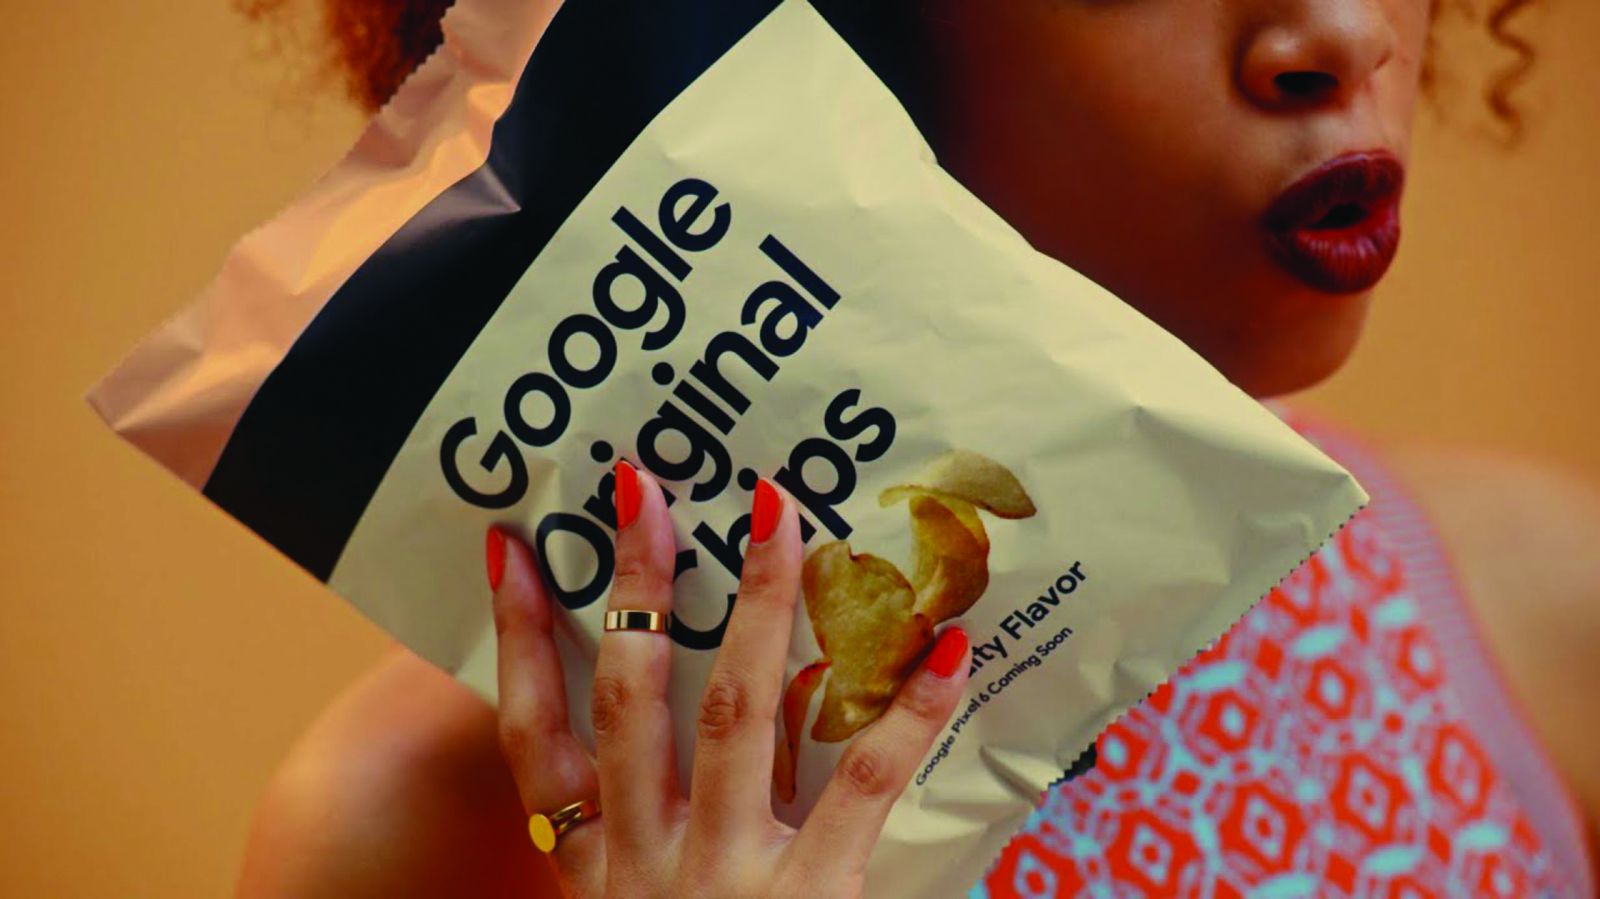 Khoai tây chiên Google Chips với số lượng có hạn và màu sắc bao bì tương tự những chiếc Pixel 6.